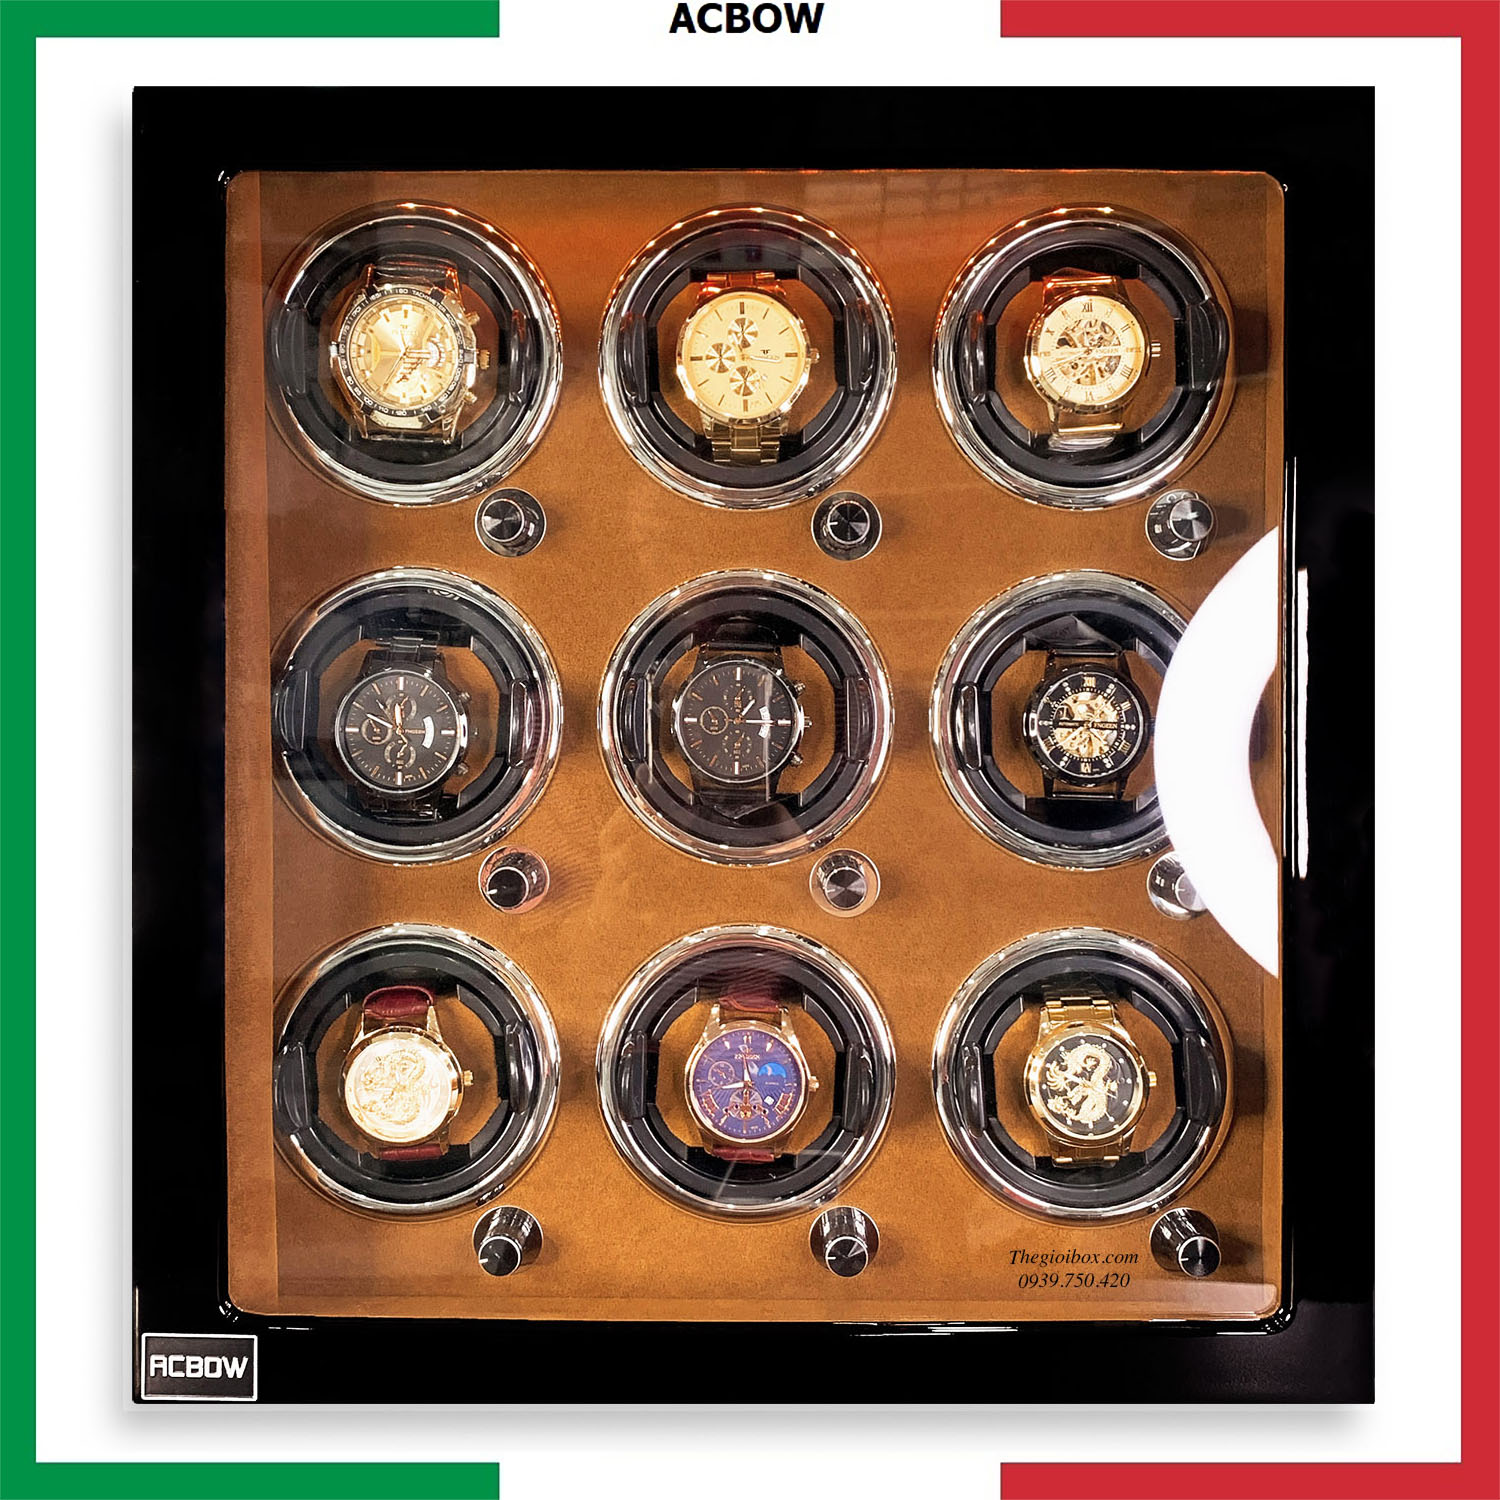 Tủ xoay đồng hồ cơ ACBOW 9 ngăn nội thất nỉ nhung nâu - vỏ gỗ - đèn LED - khóa an toàn